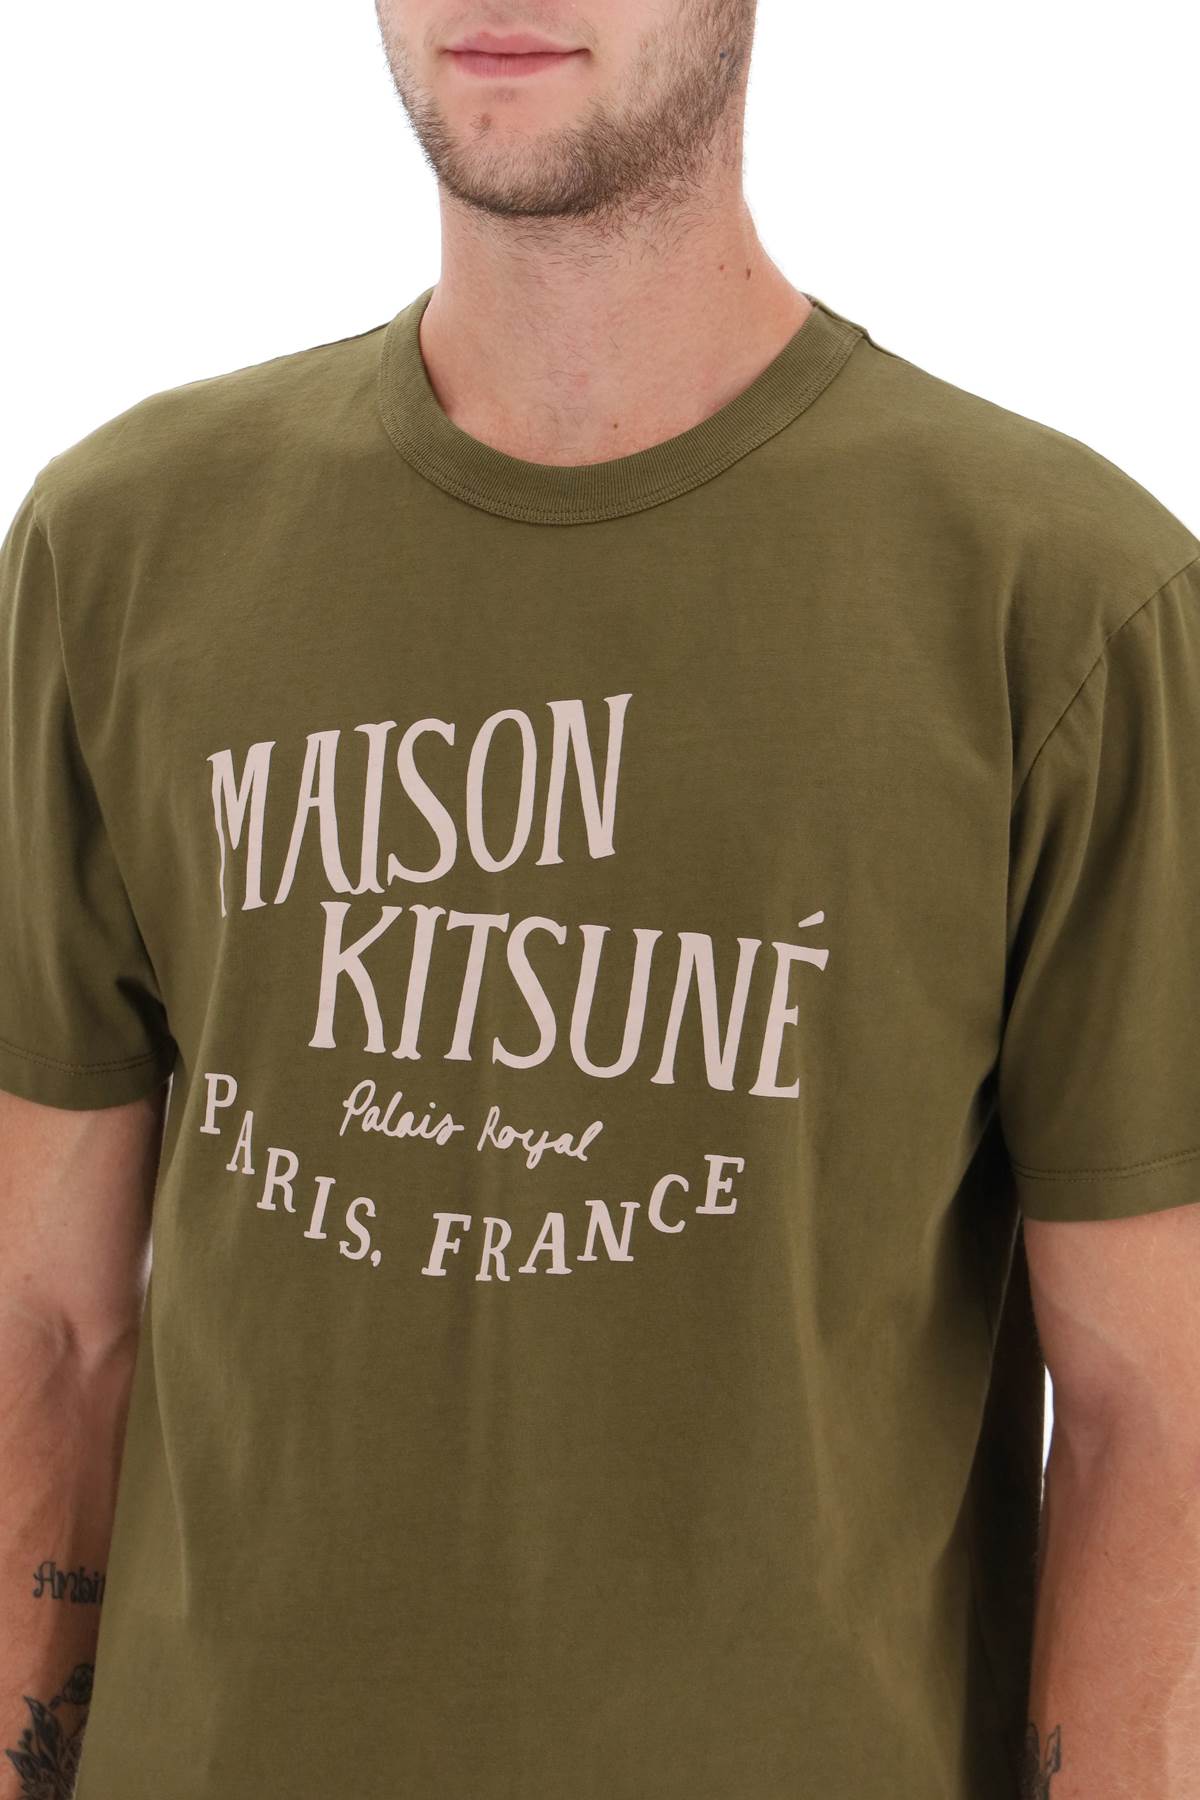 Maison kitsune 'palais royal' print t-shirt-3